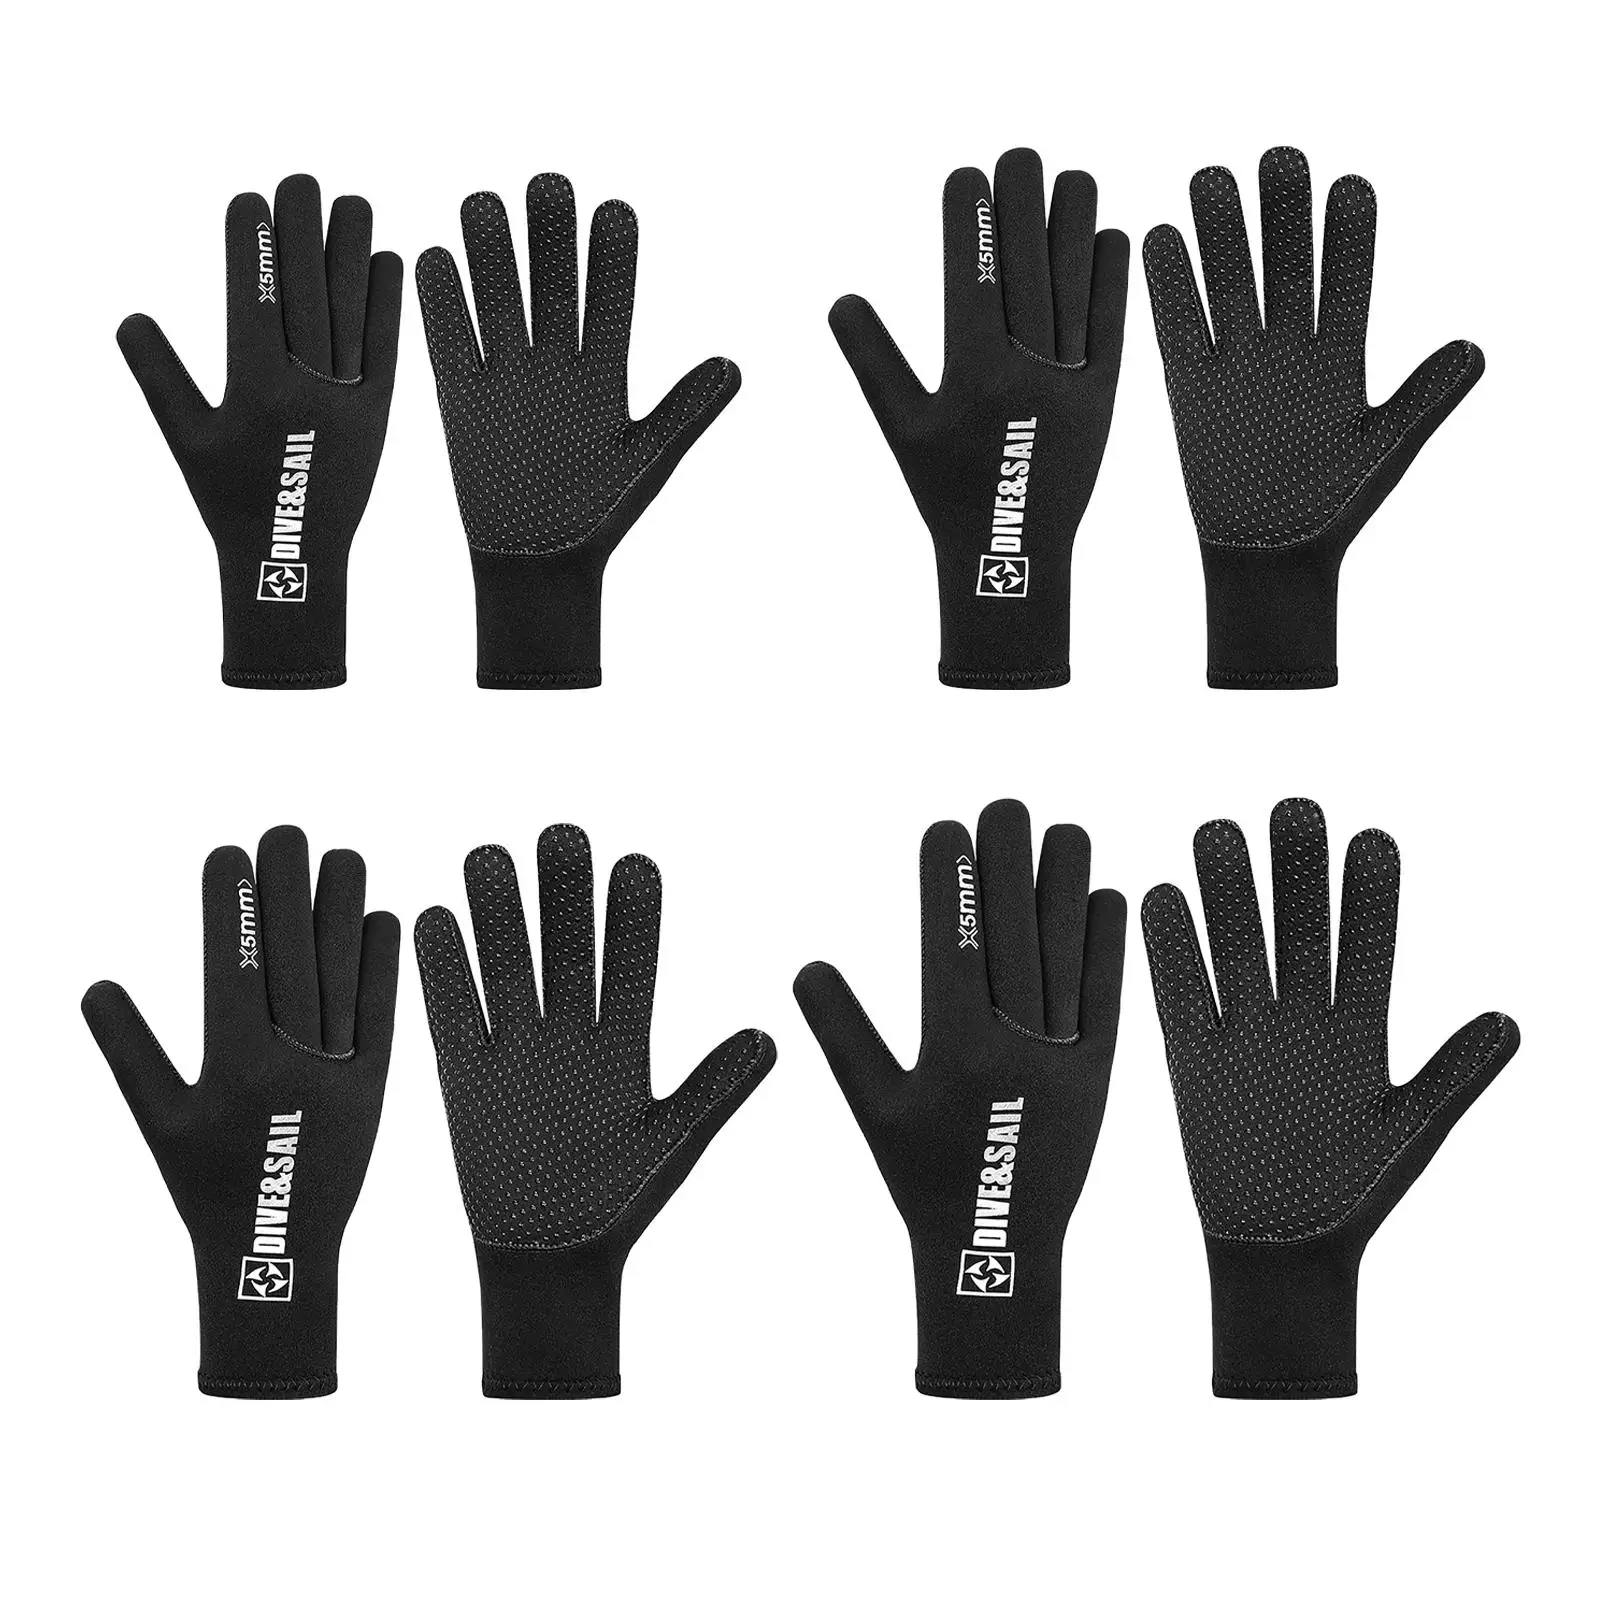 Diving Gloves Flexible Anti-Slip Wetsuit Five Finger Glove for Canoeing